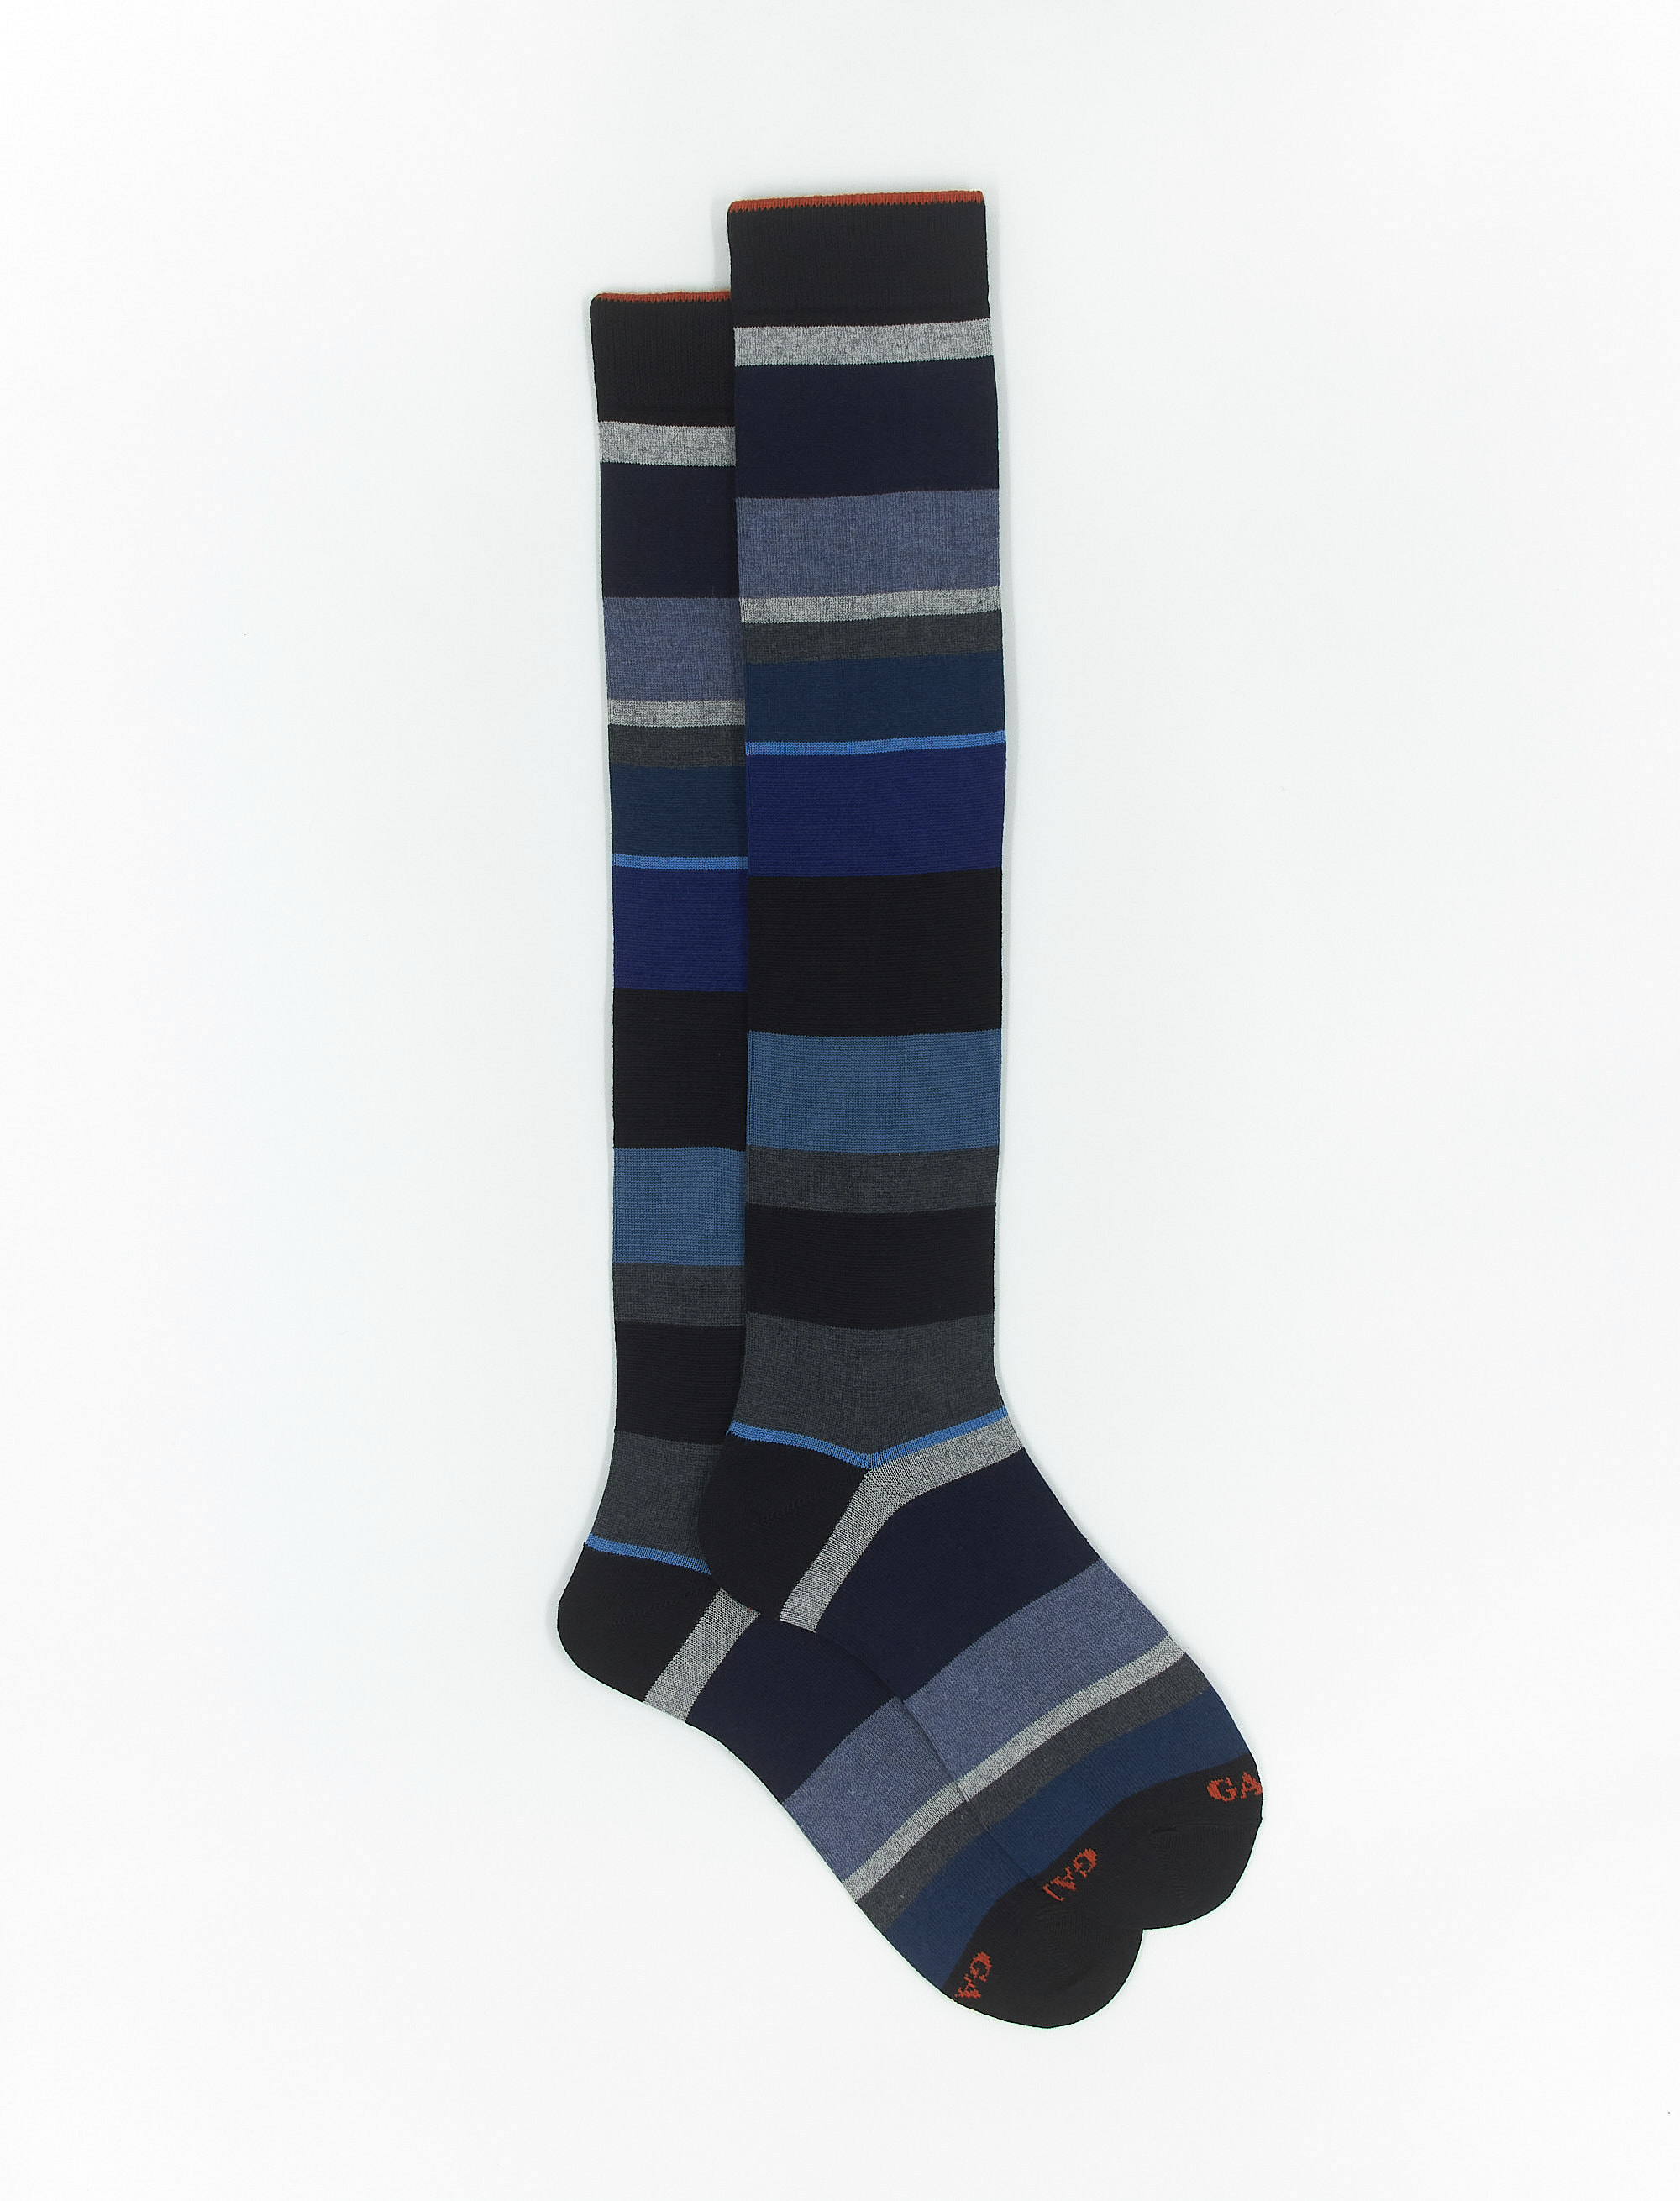 Calze lunghe donna cotone e cashmere nero righe multicolor macro - Gallo 1927 - Official Online Shop